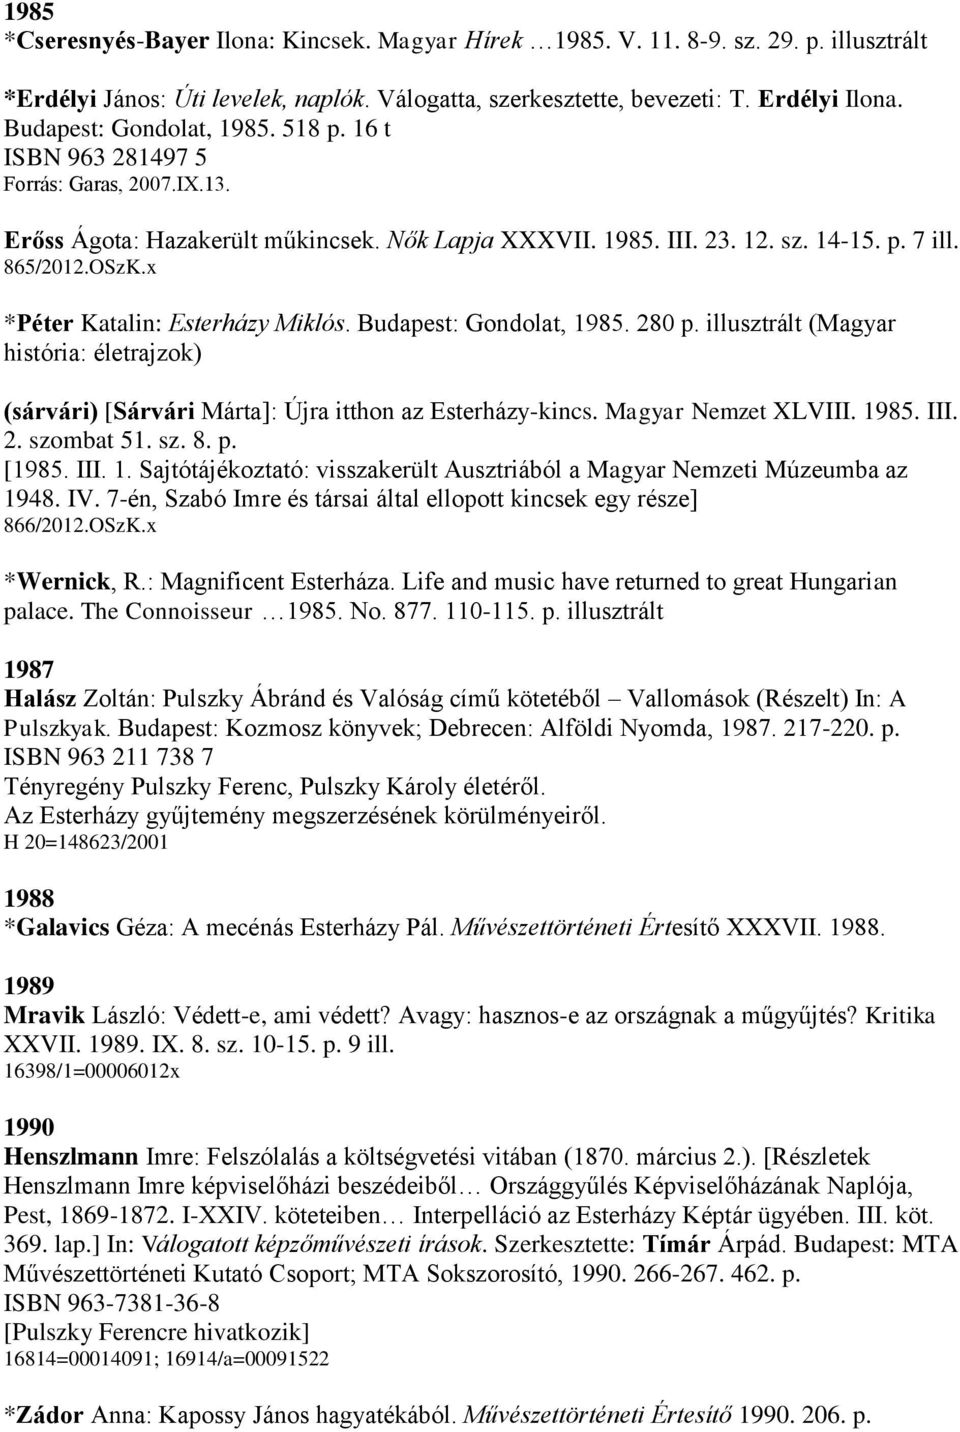 Budapest: Gondolat, 1985. 280 p. illusztrált (Magyar história: életrajzok) (sárvári) [Sárvári Márta]: Újra itthon az Esterházy-kincs. Magyar Nemzet XLVIII. 1985. III. 2. szombat 51. sz. 8. p. [1985.